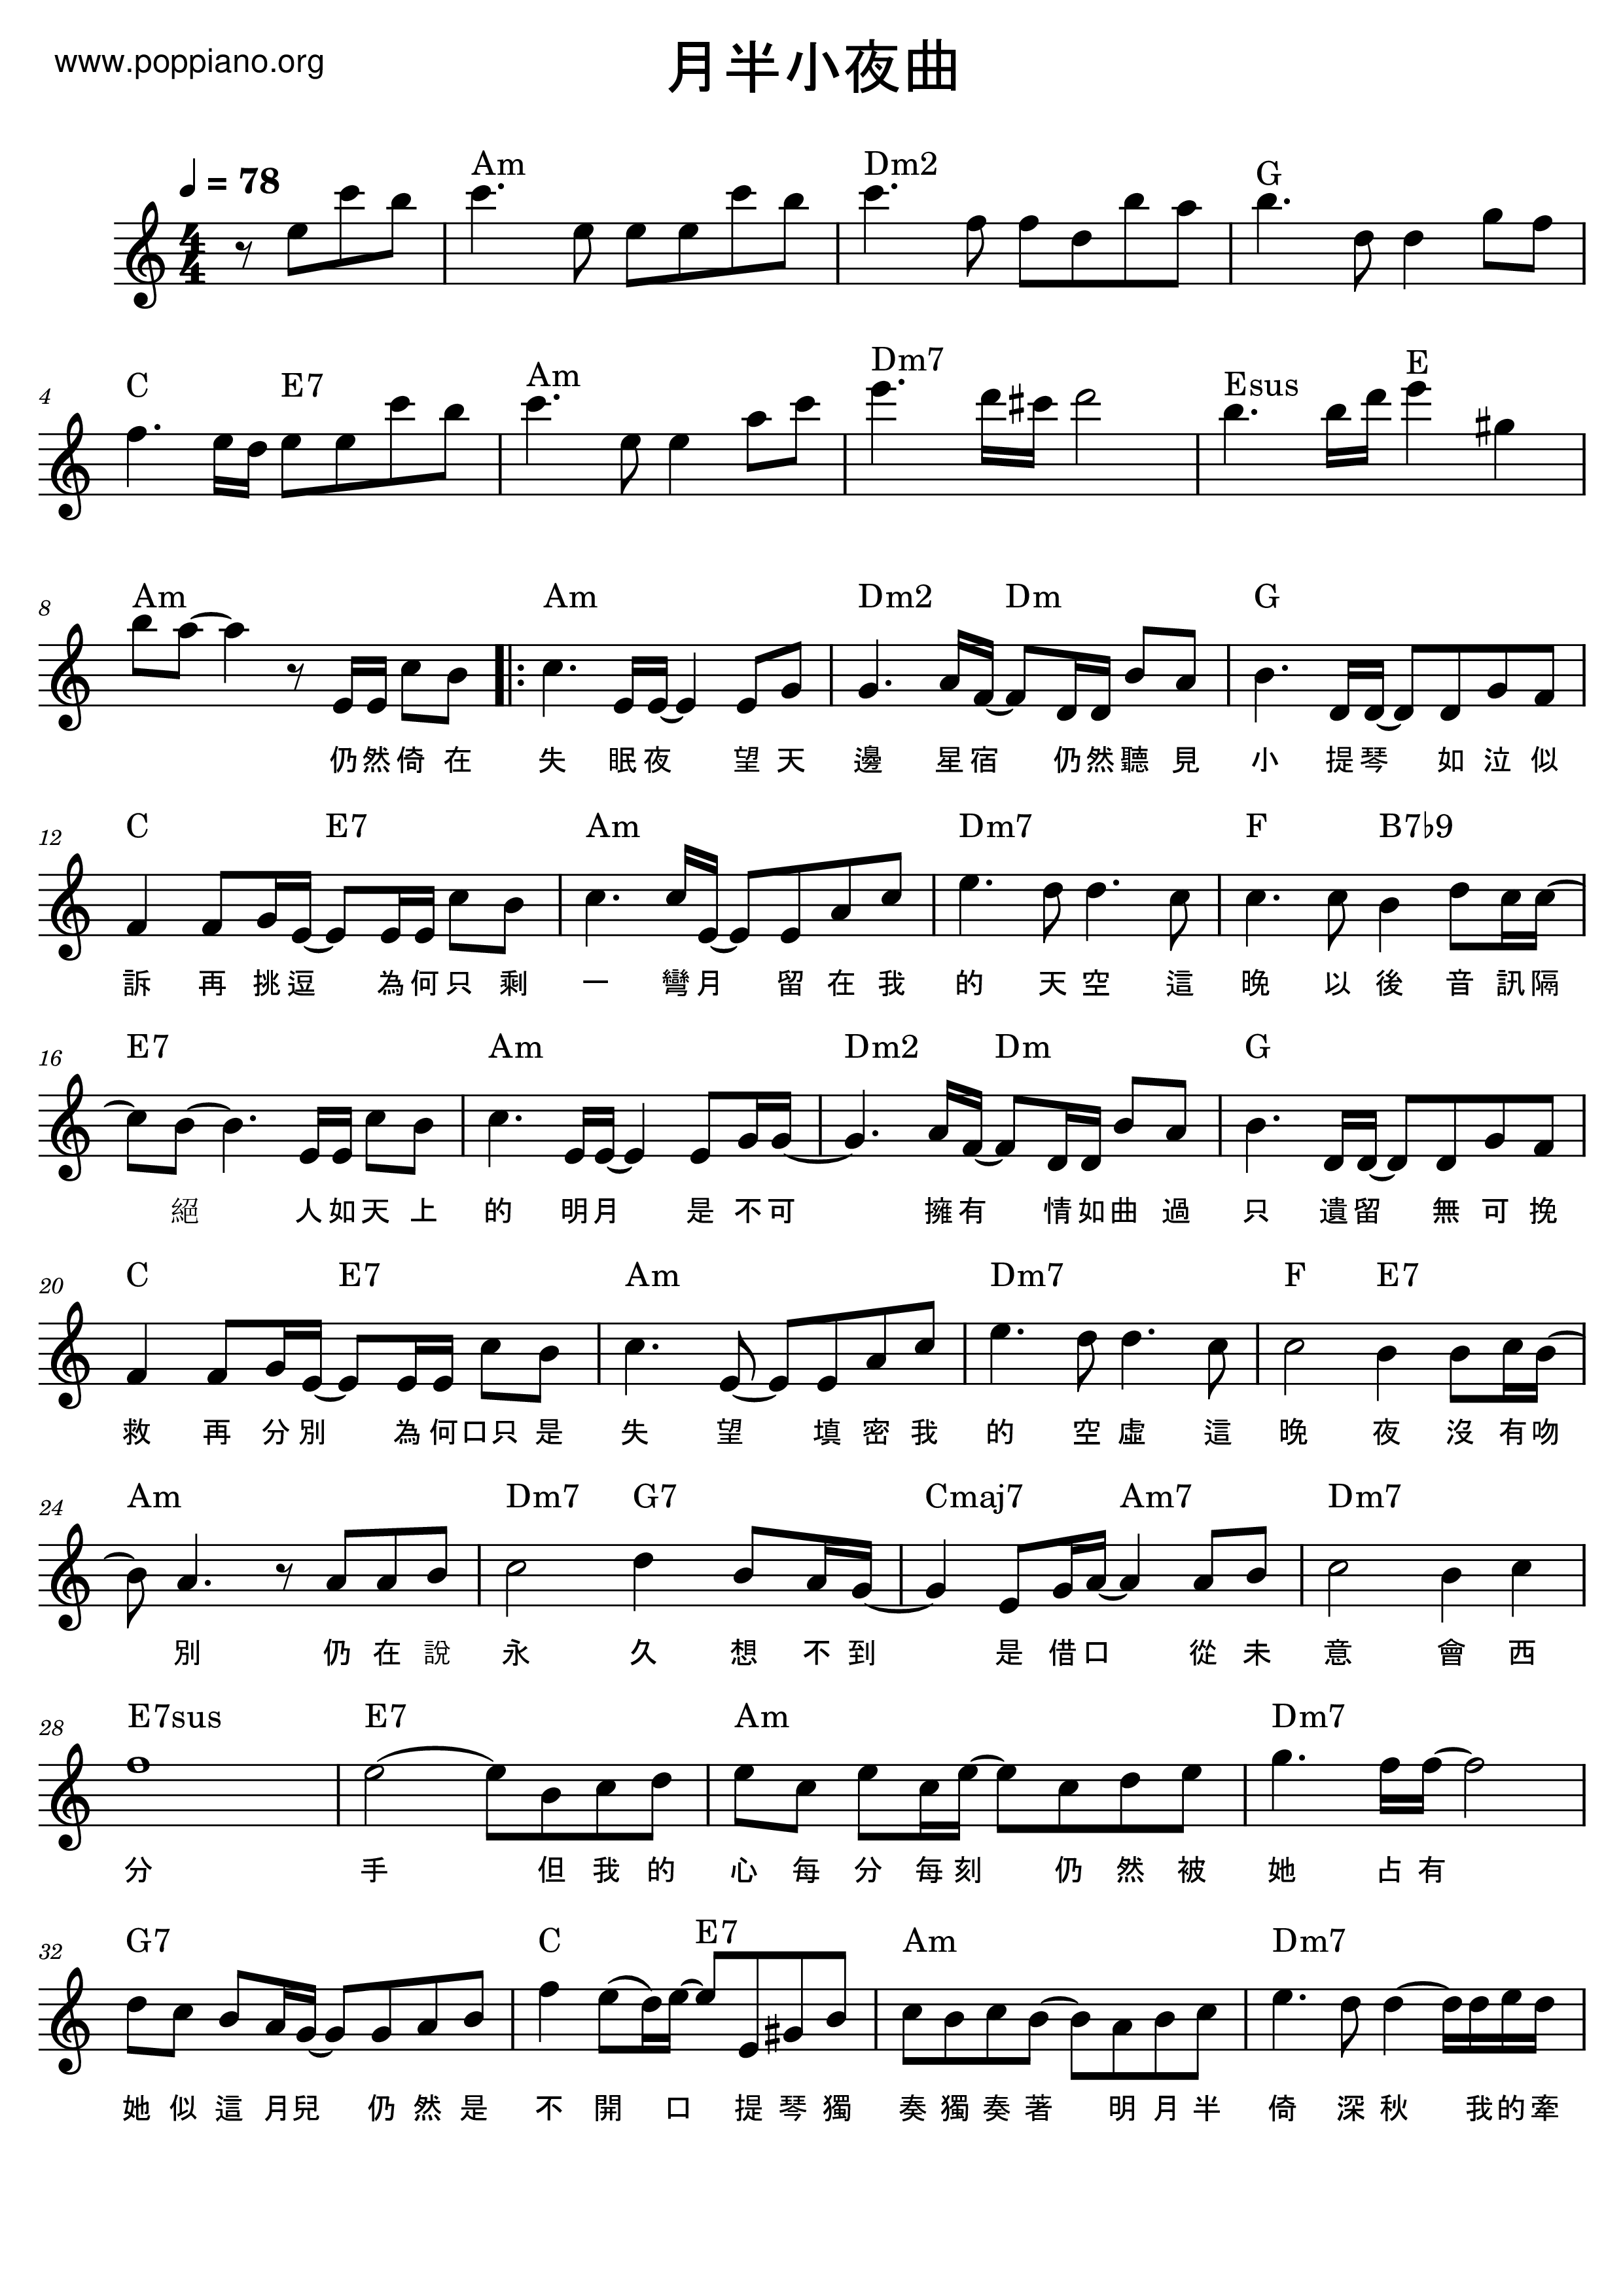 Moonlight Serenade Score